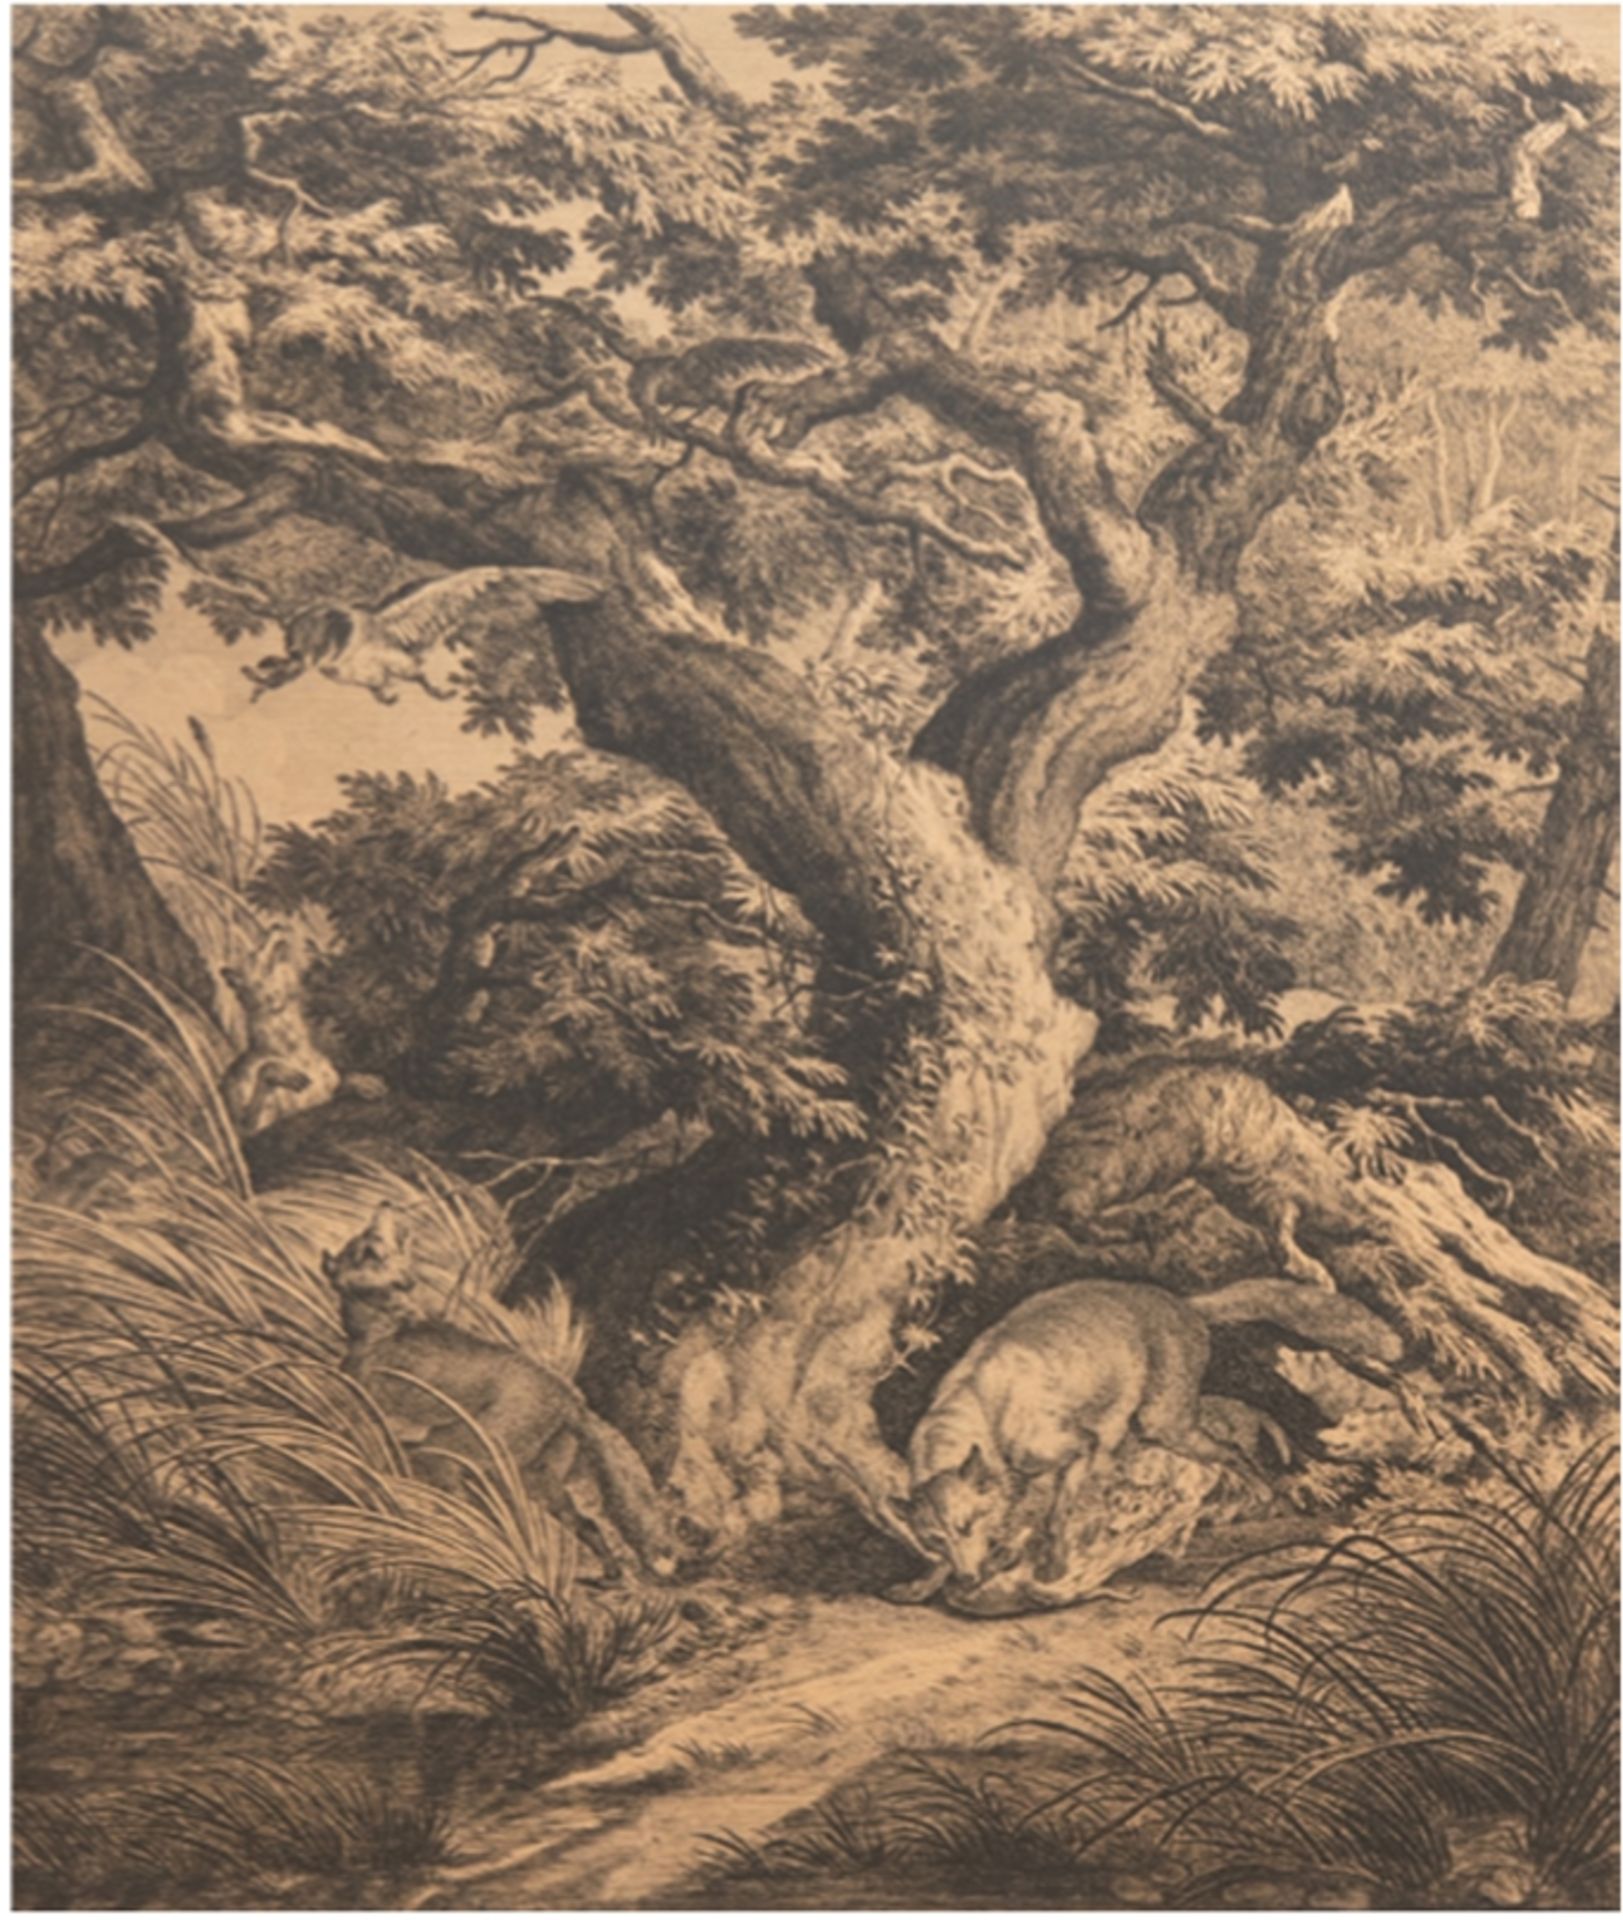 Ridinger, Johann Elias (1698-1767) "Füchse beim Fressen auf der Jagd", Kupferstich, unterhalb "Spuh